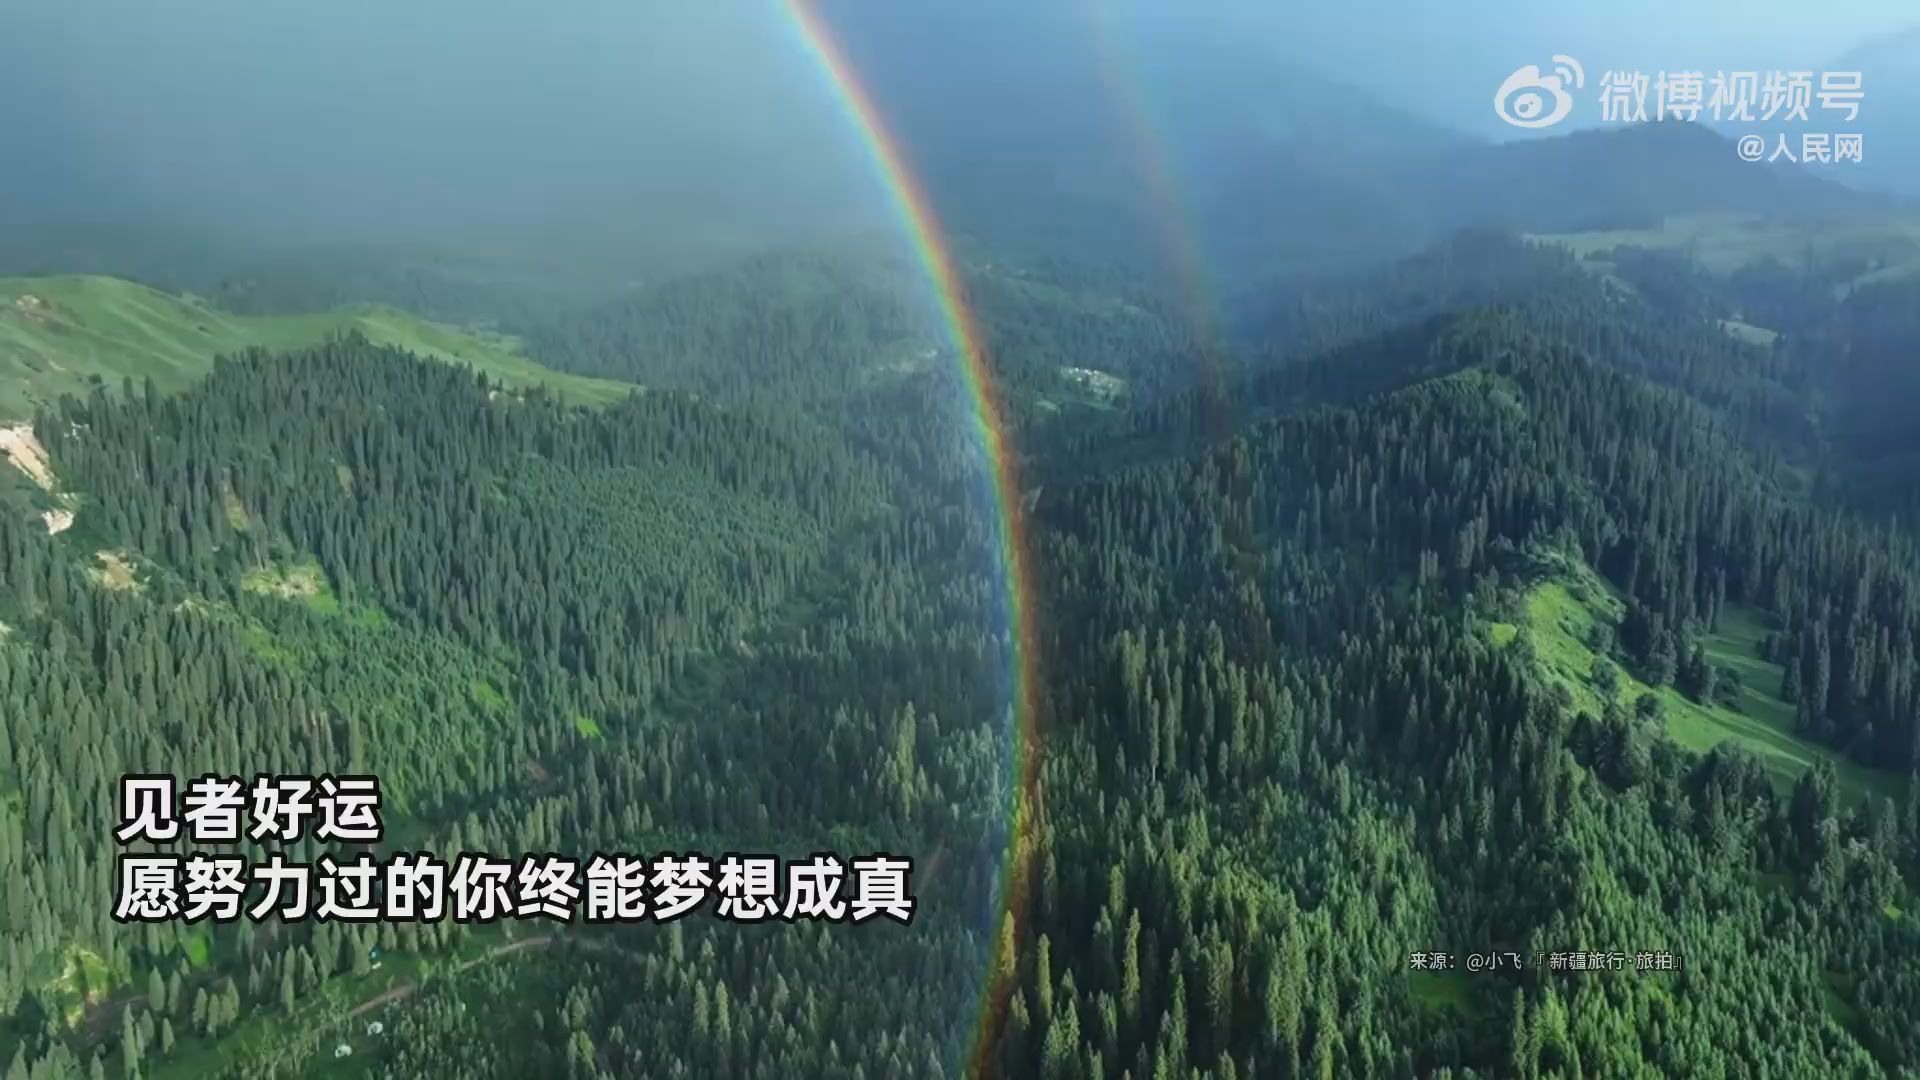 新疆現巨大雙圓環彩虹